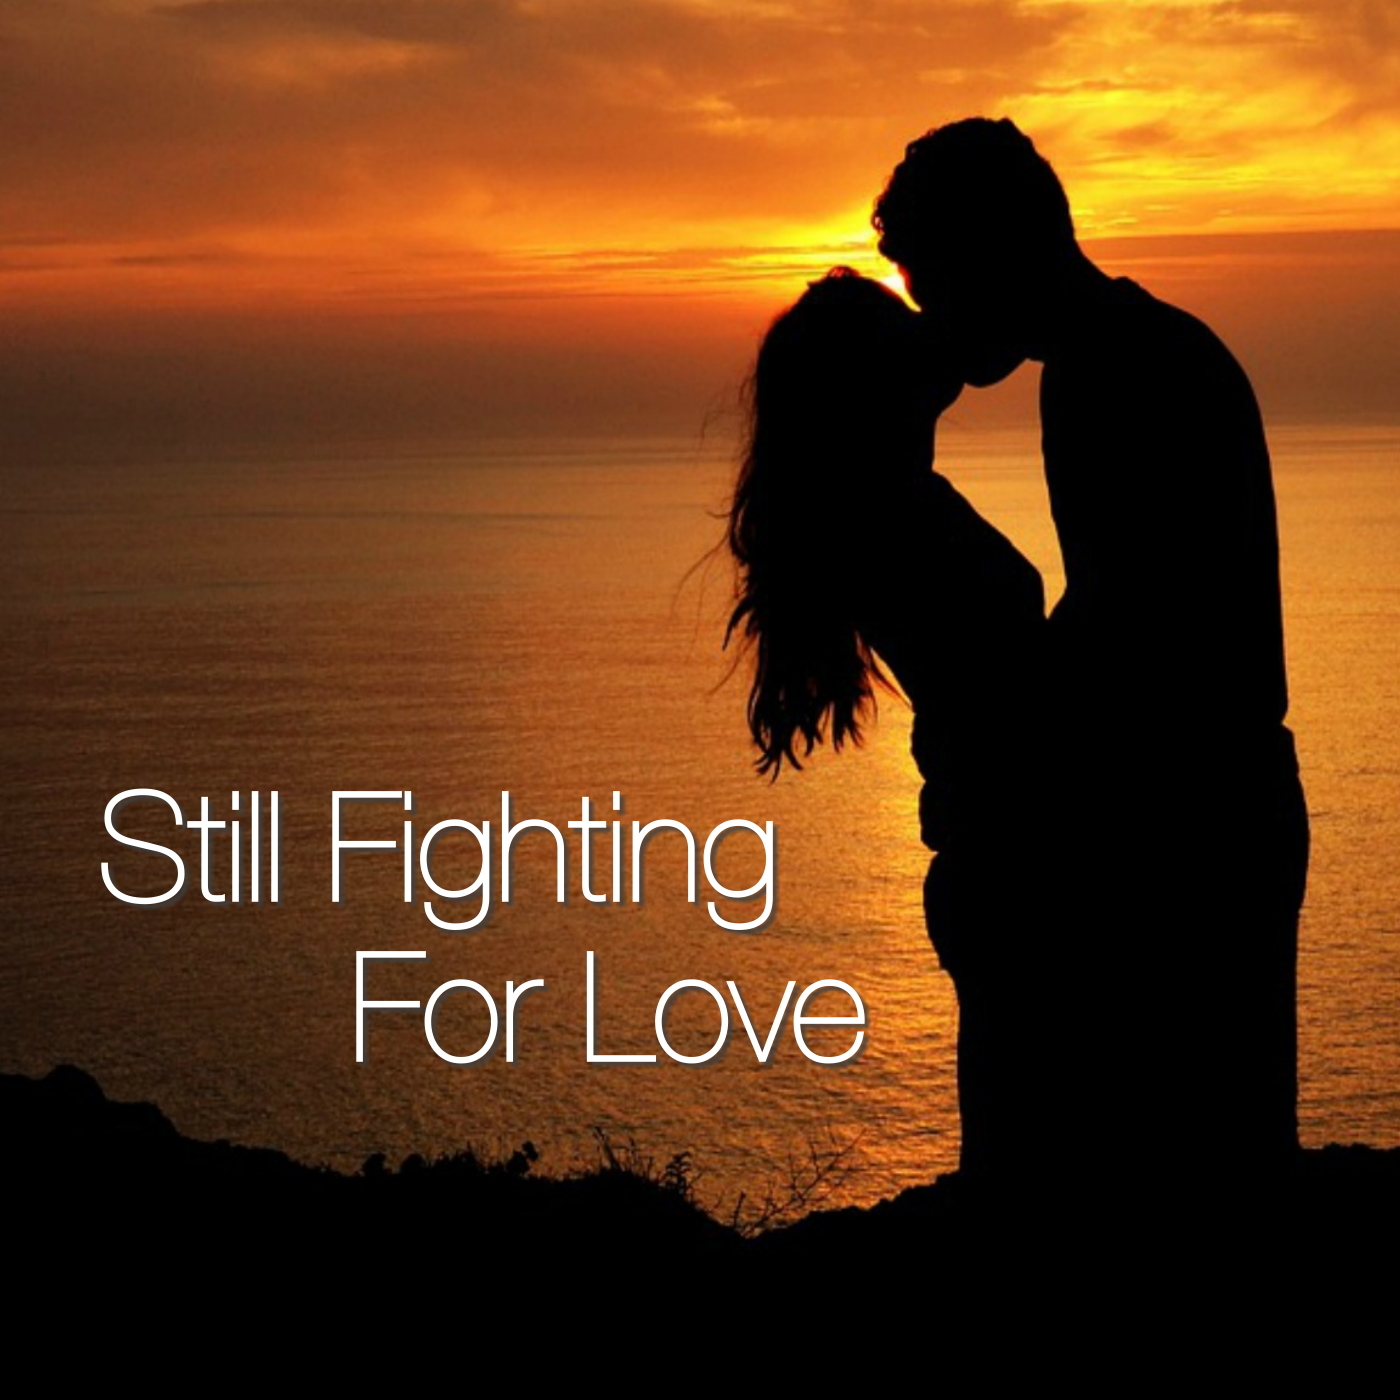 Still Fighting For Love